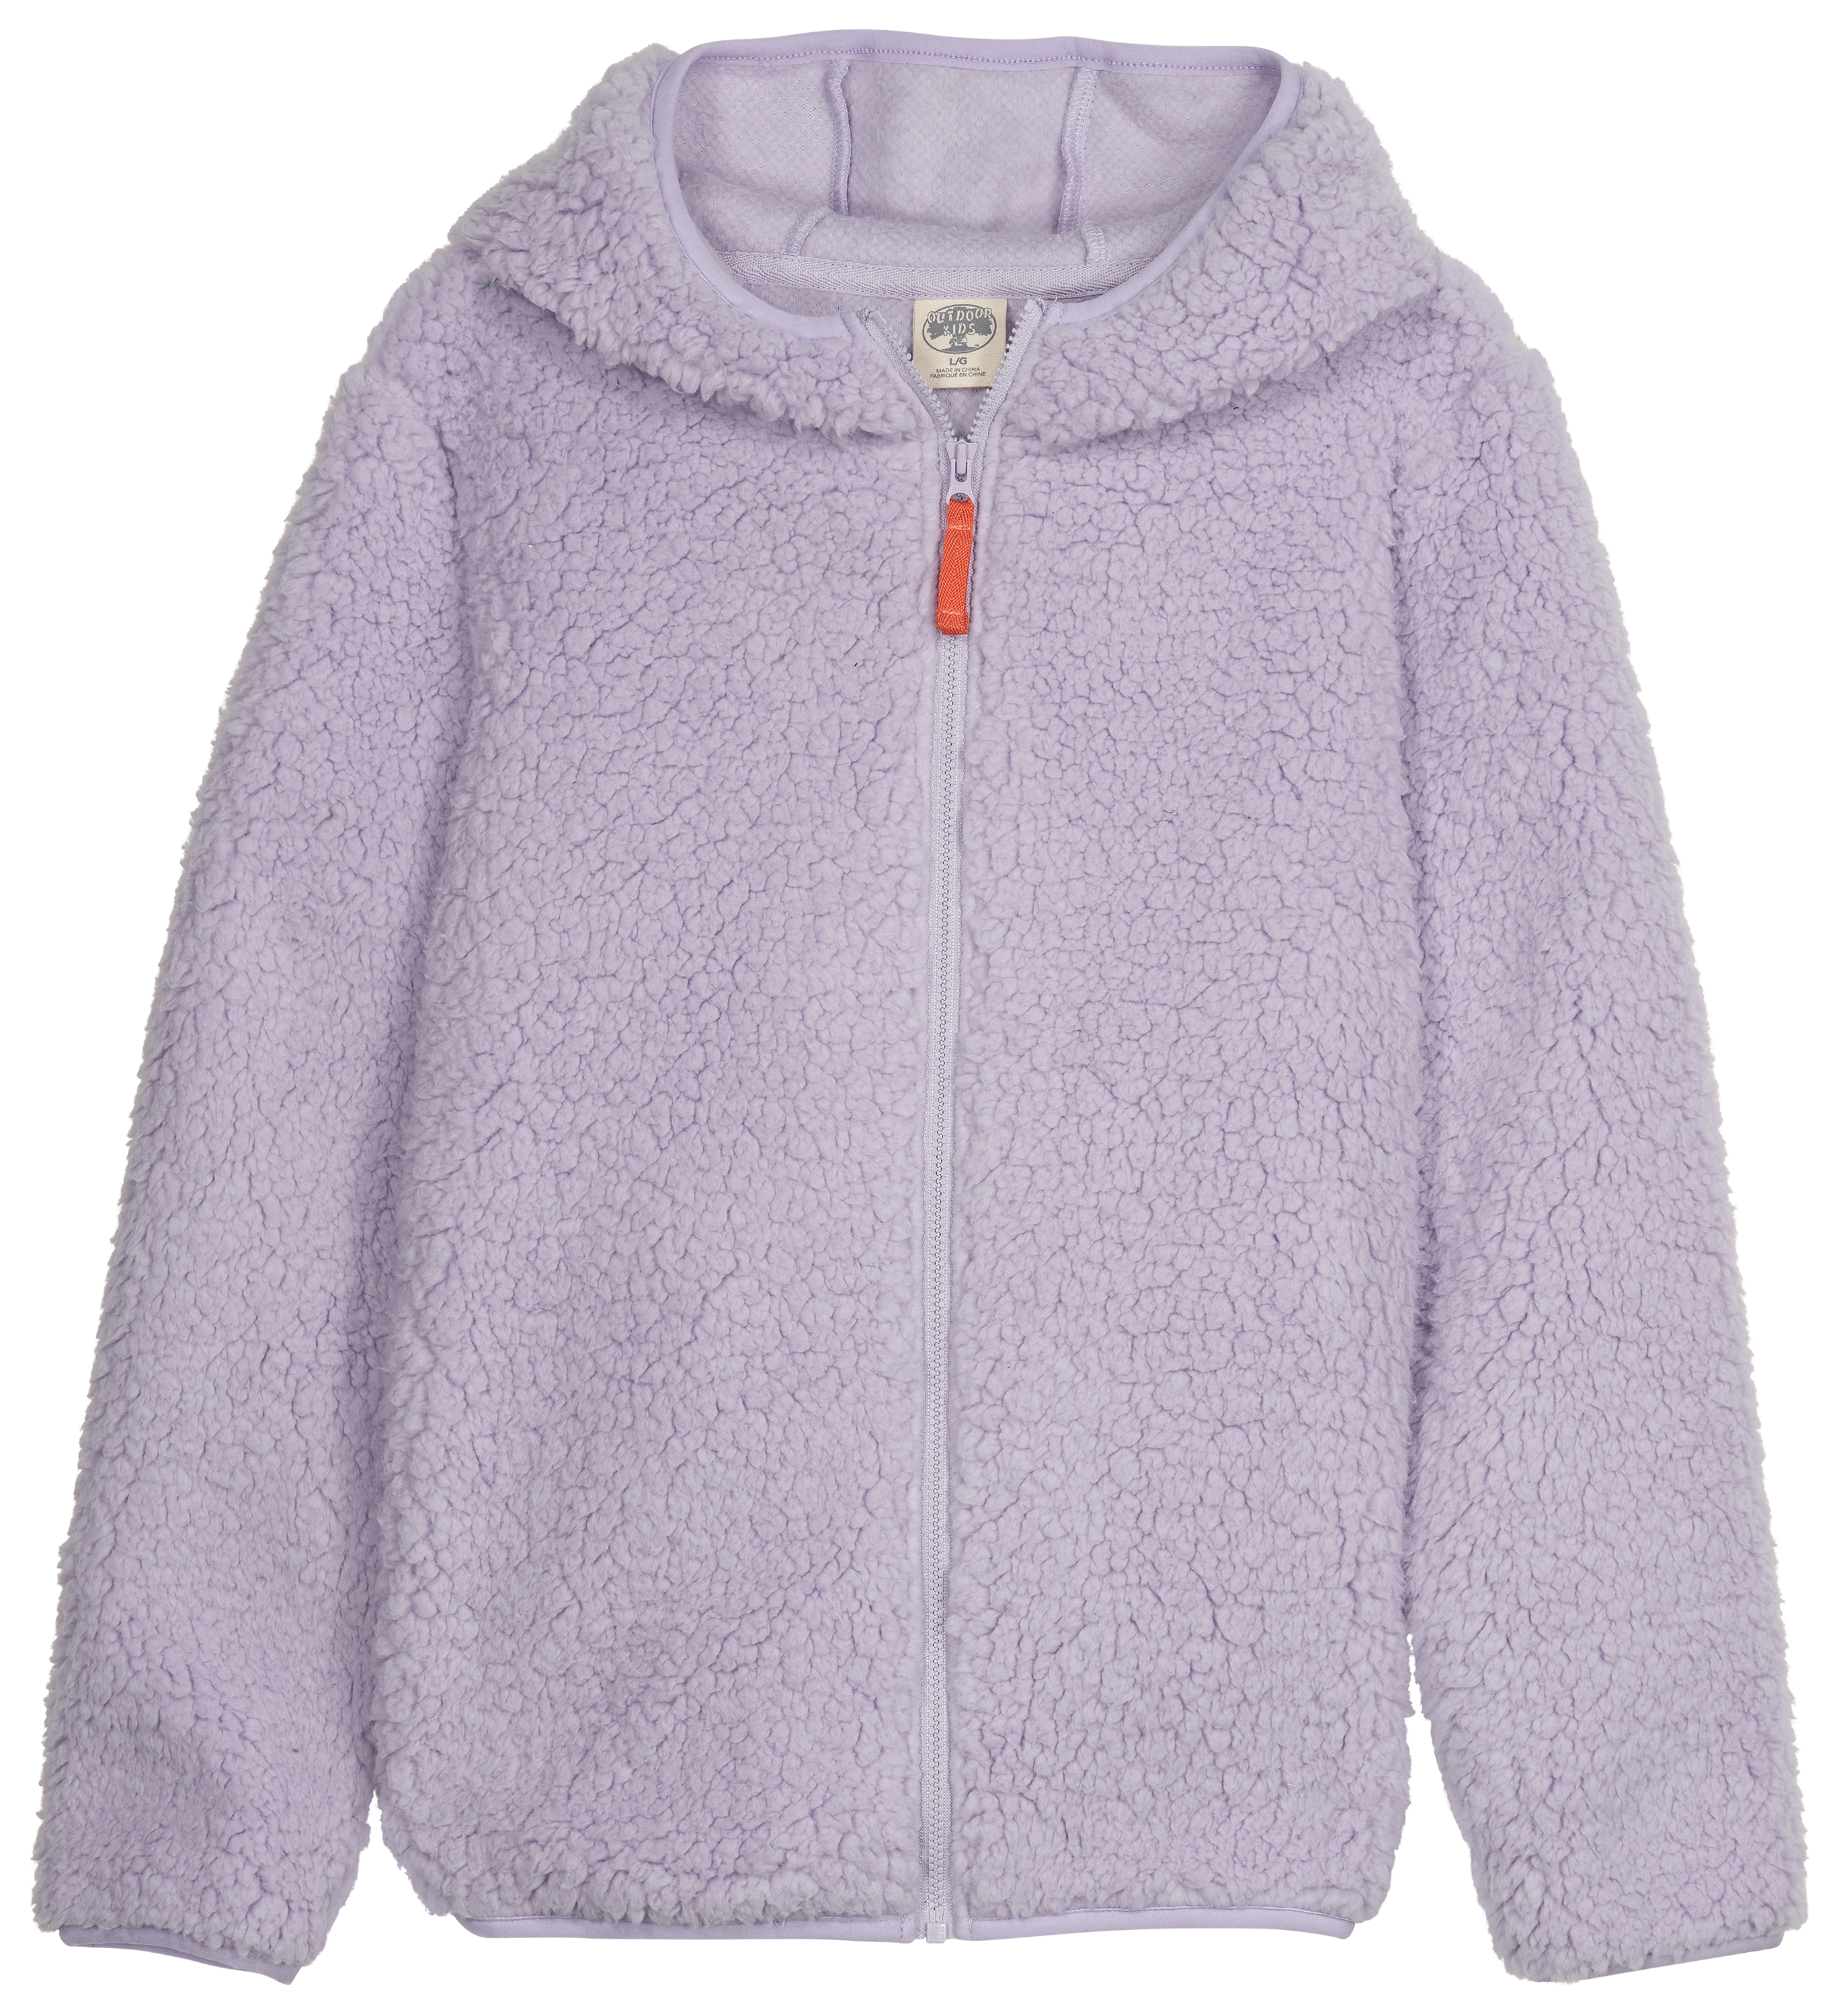 Outdoor Kids Cozy Fleece Full-Zip Hoodie for Kids - Lavender - XS